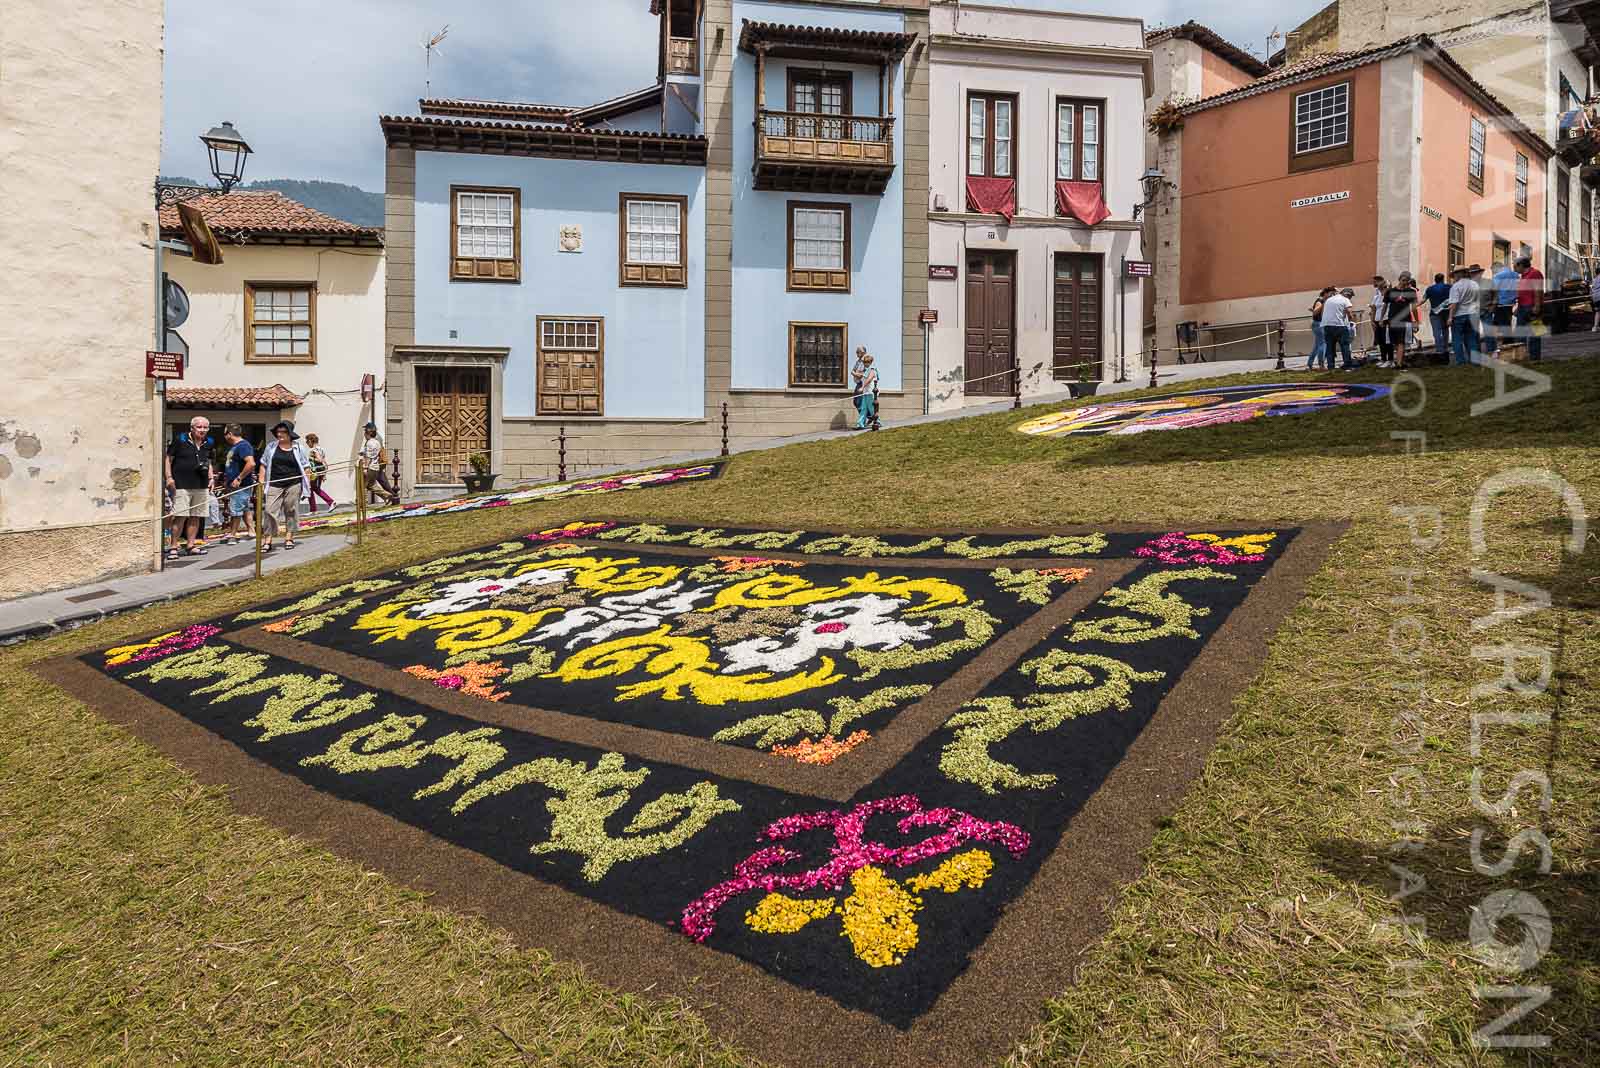 Dia de Alfombra 2017 in La Orotava - Blumenteppiche auf den Straße